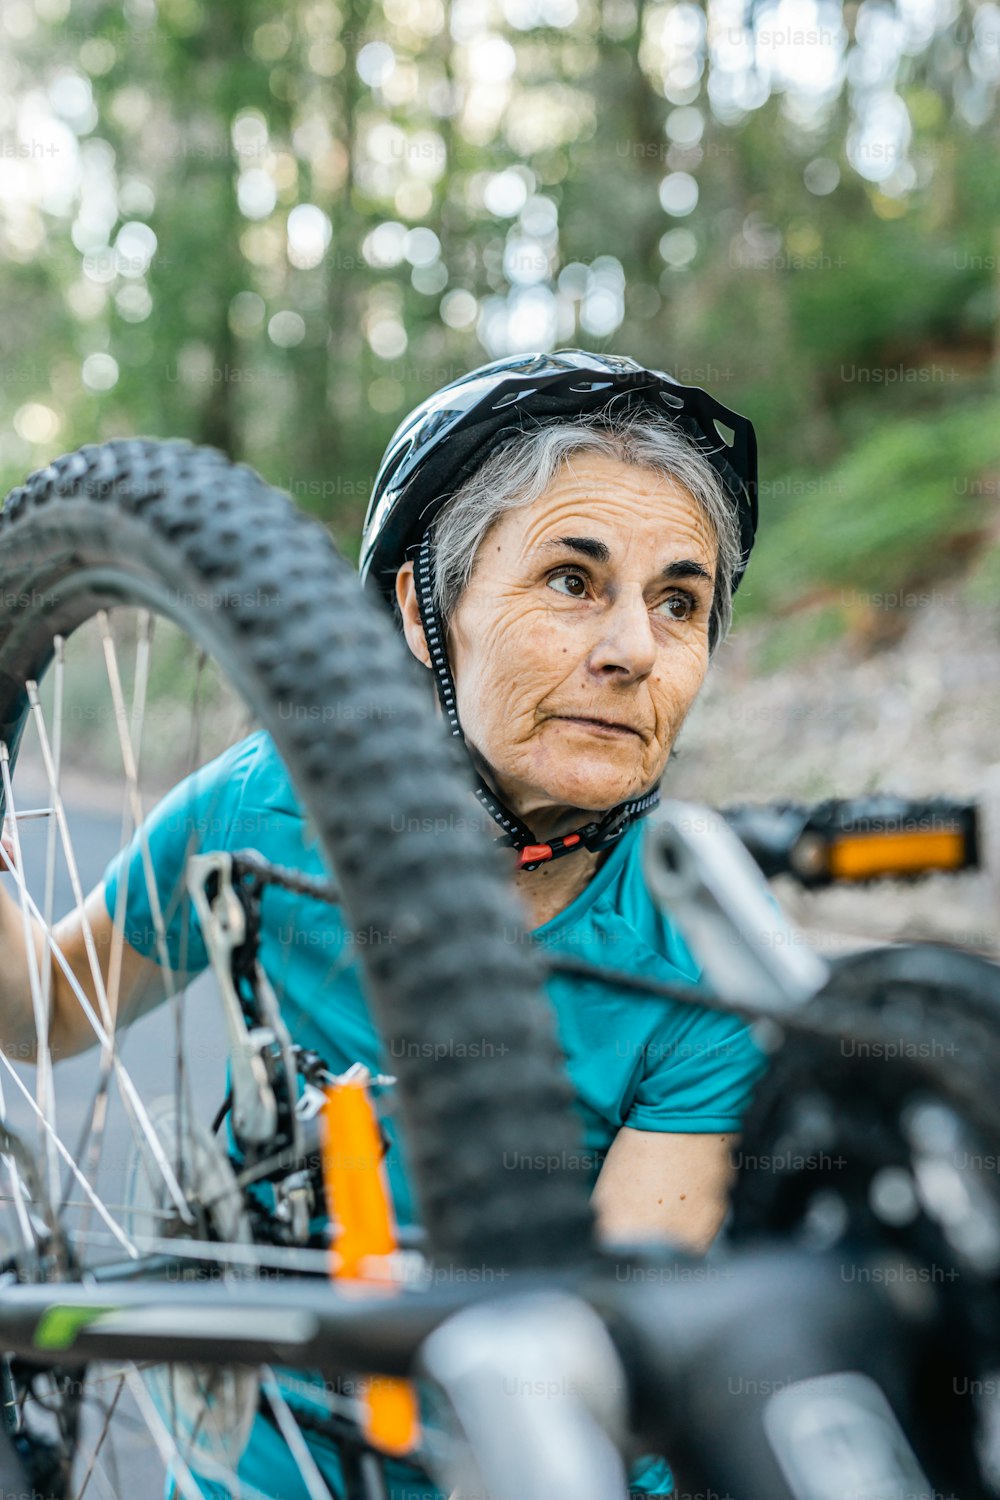 Une femme avec un casque est à côté d’un vélo